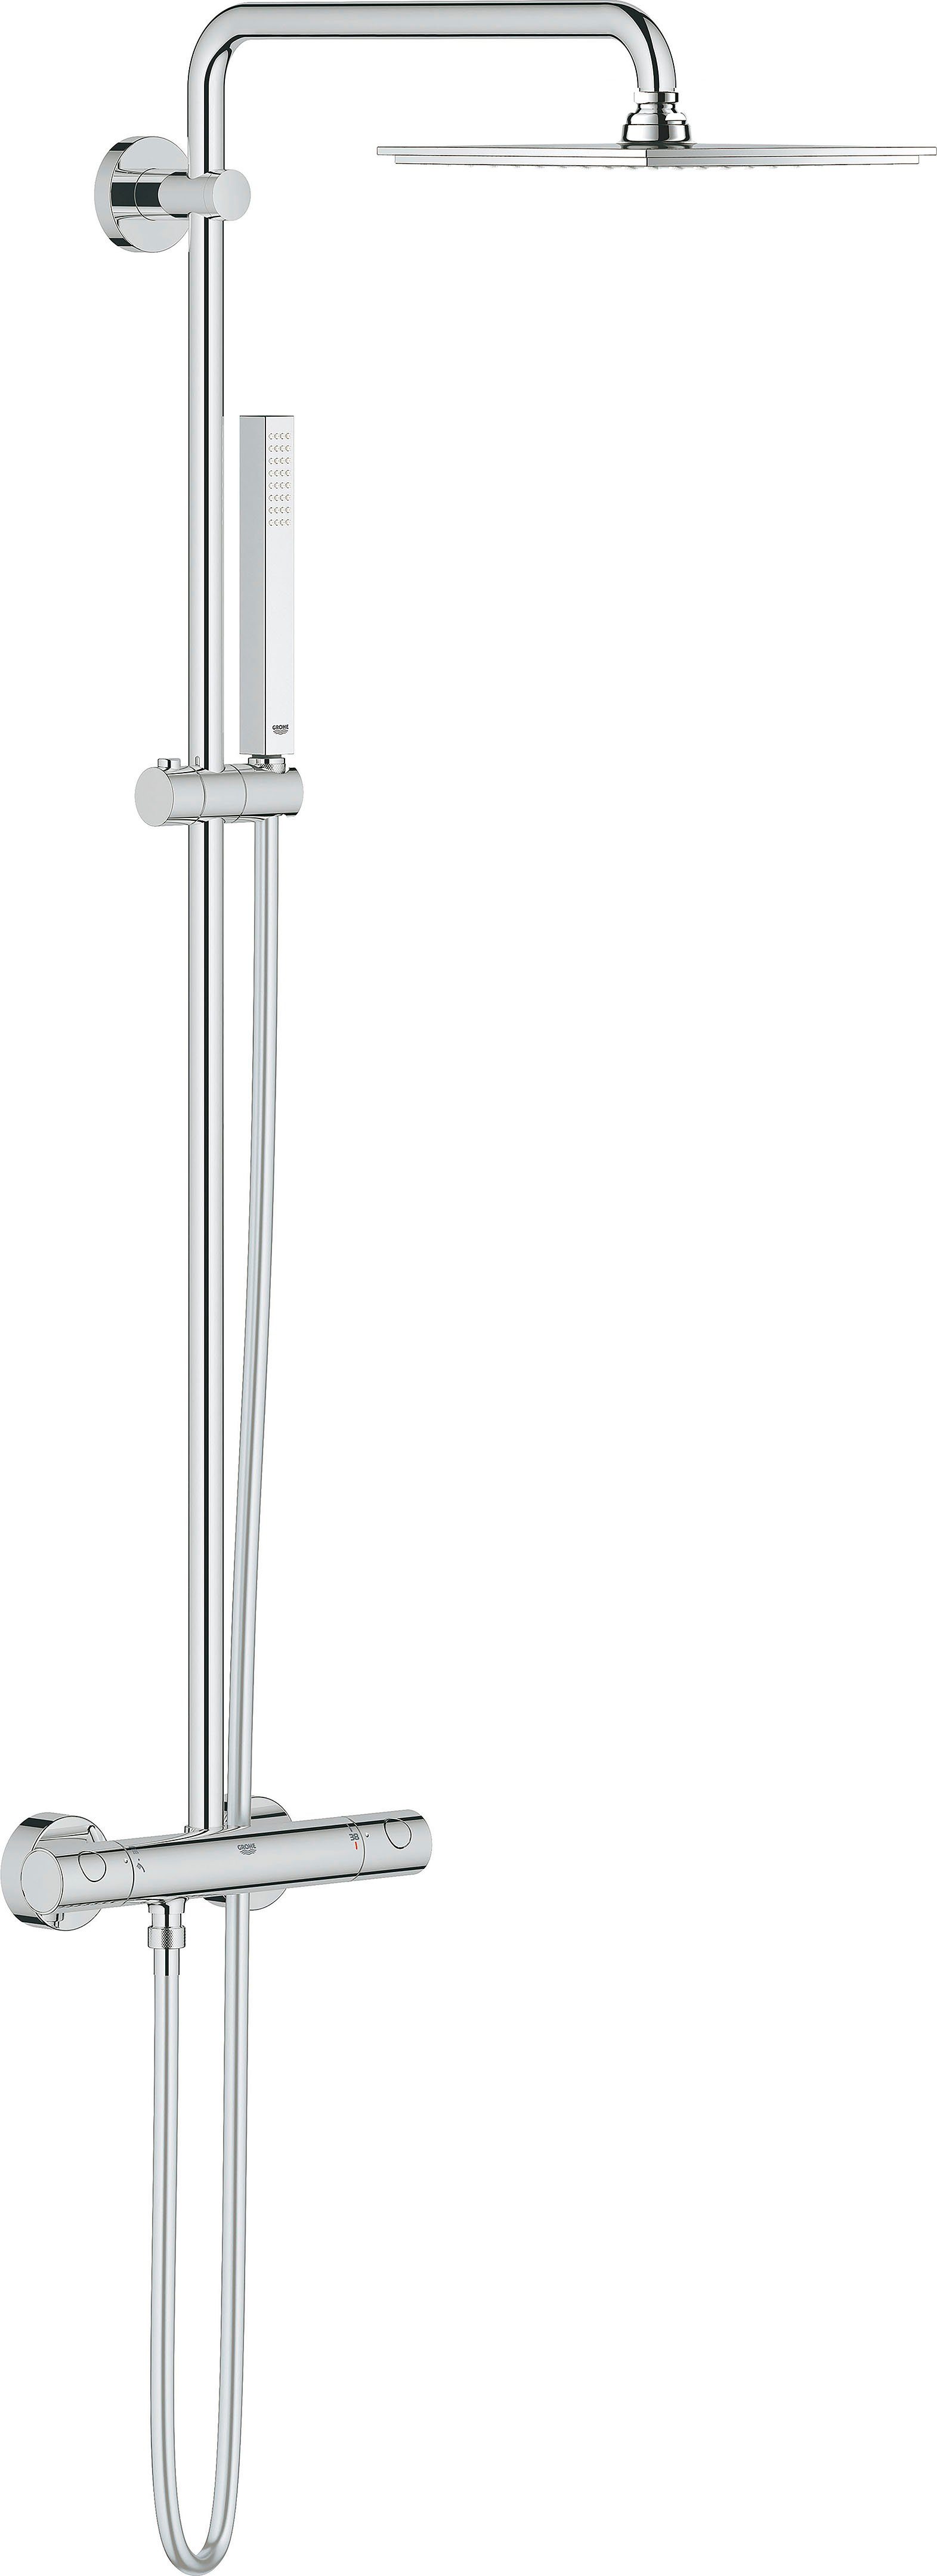 Grohe Duschsystem Euphoria, Höhe 113,2 cm, 1 Strahlart(en), Packung, mit langlebieger und scheinender Oberfläche | Brausegarnituren